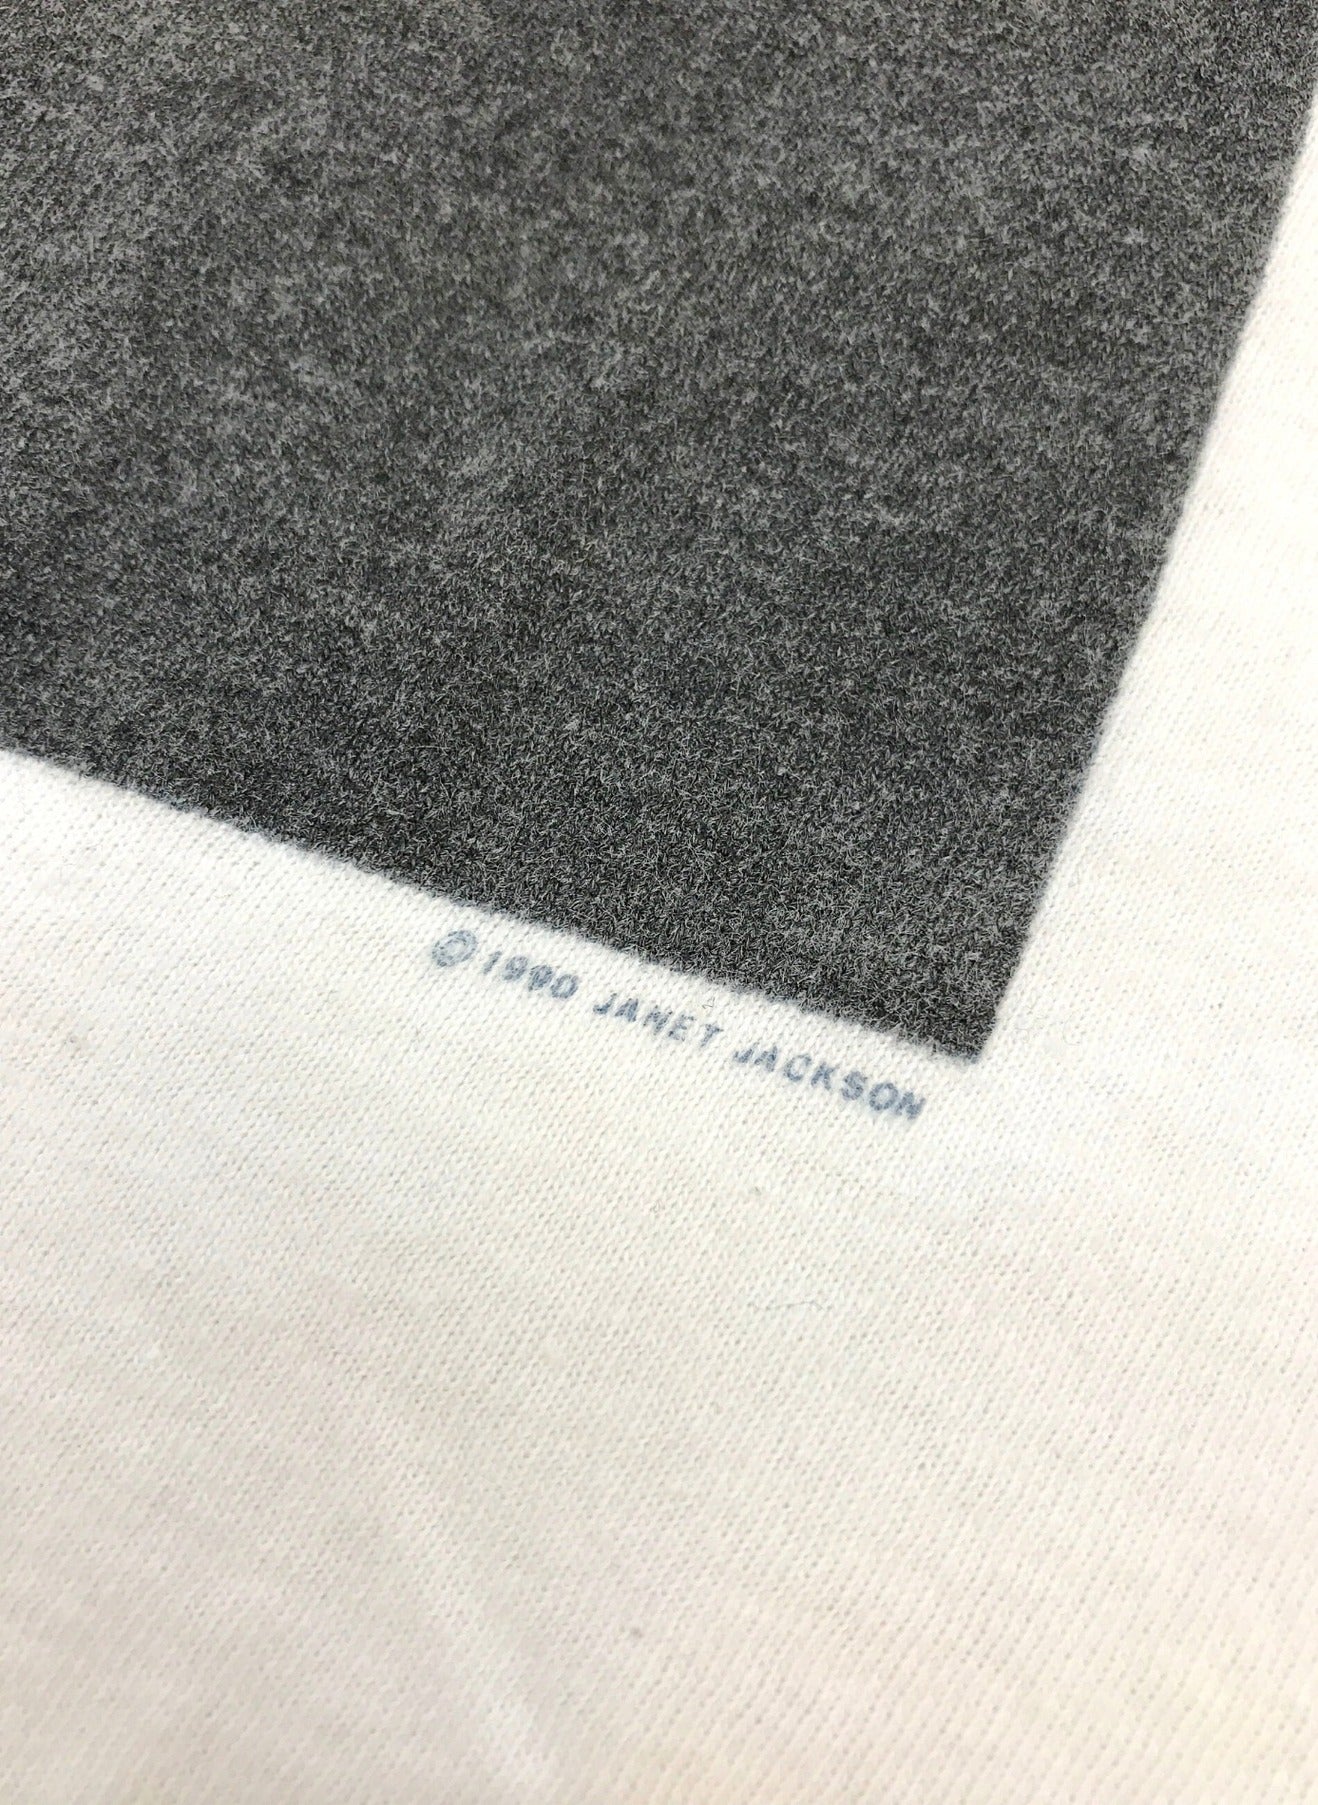 [复古服] 90年代的珍妮特·杰克逊艺术家T恤